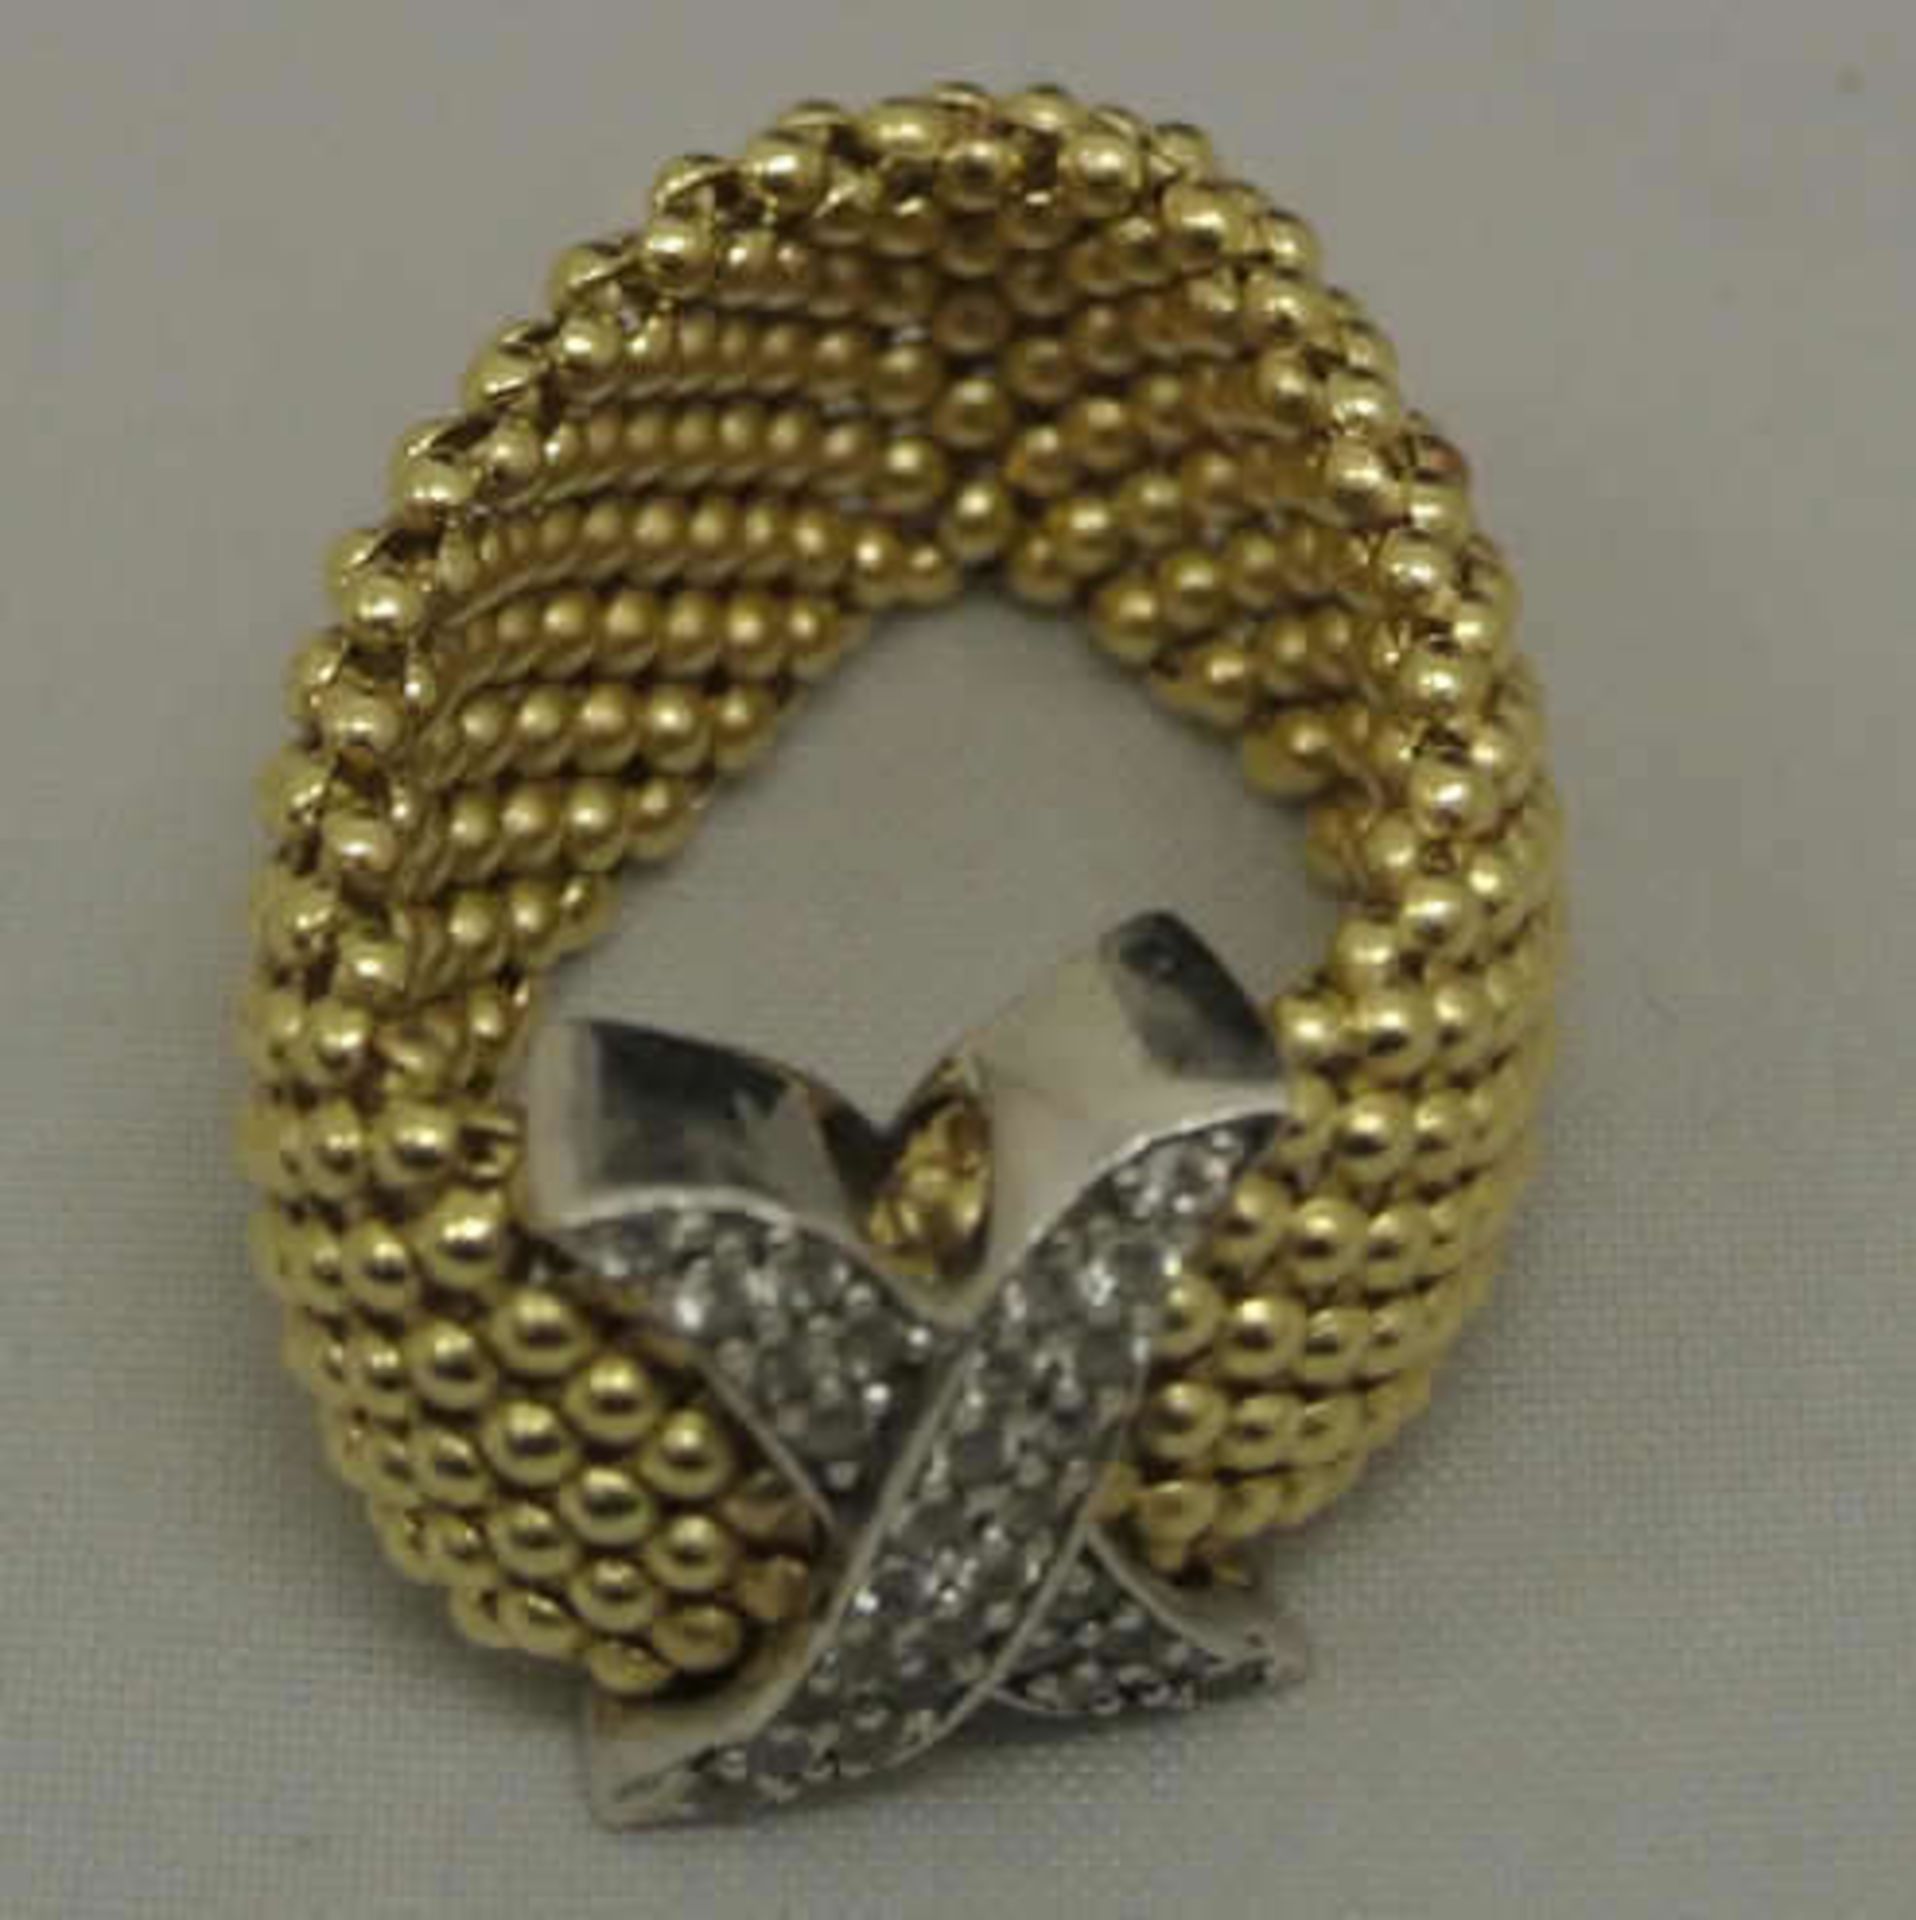 Damenring, 585er Gelbgold, besetzt mit Zirkonias, Ringgröße ca.60, Gewicht ca. 8 gr Ladies ring, 585